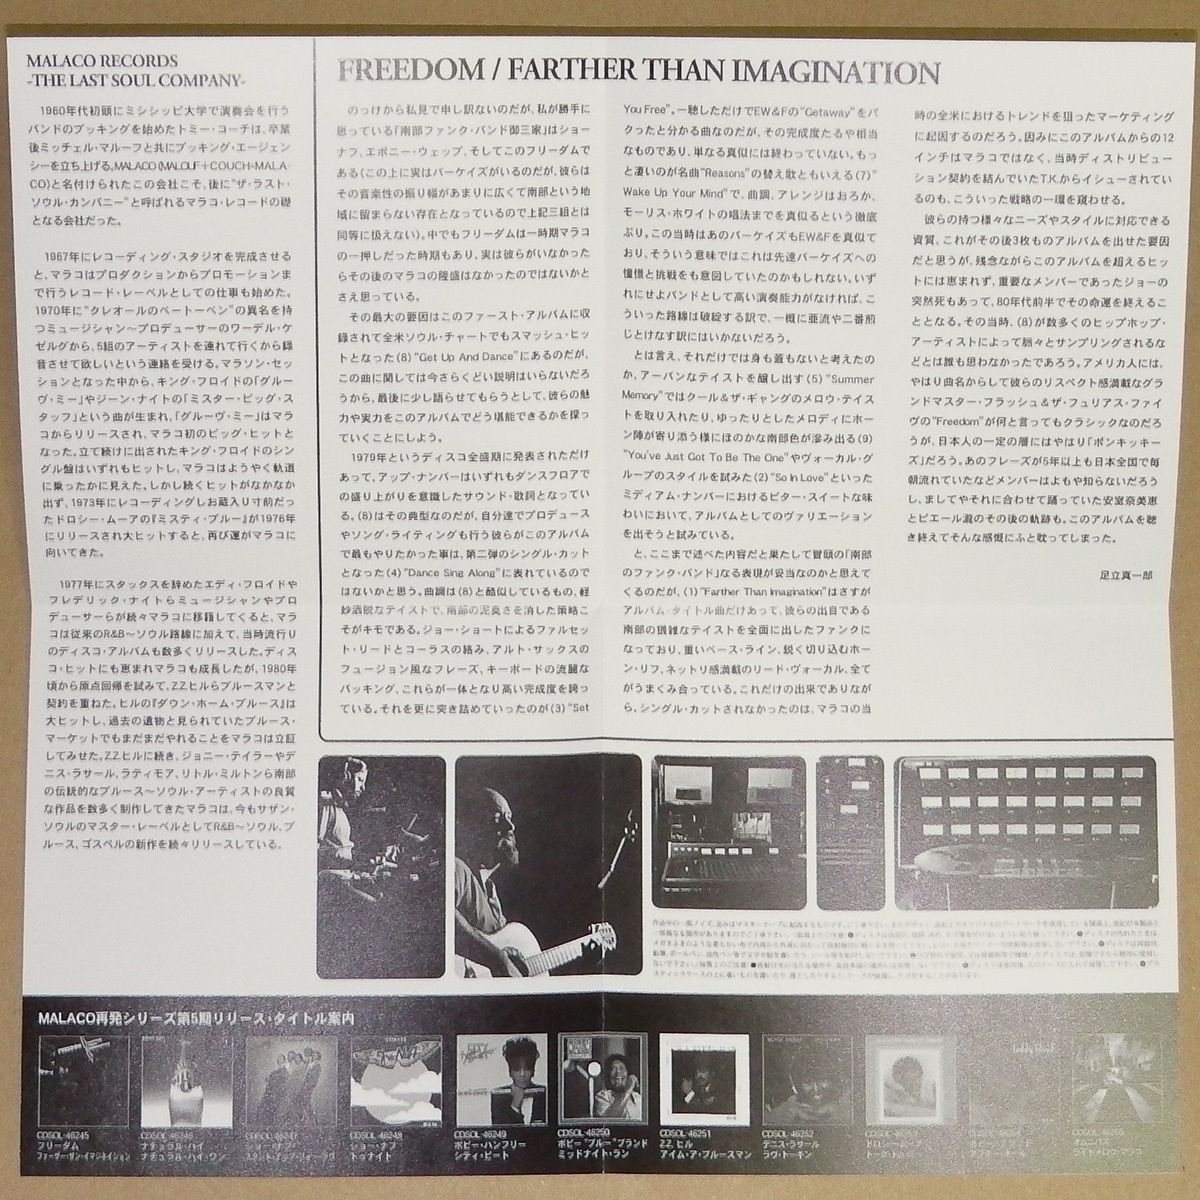 中古日本盤CD Freedom Farther Than Imagination Bonus +7 Japan Edition [CDSOL-46245] Get Up And Dance